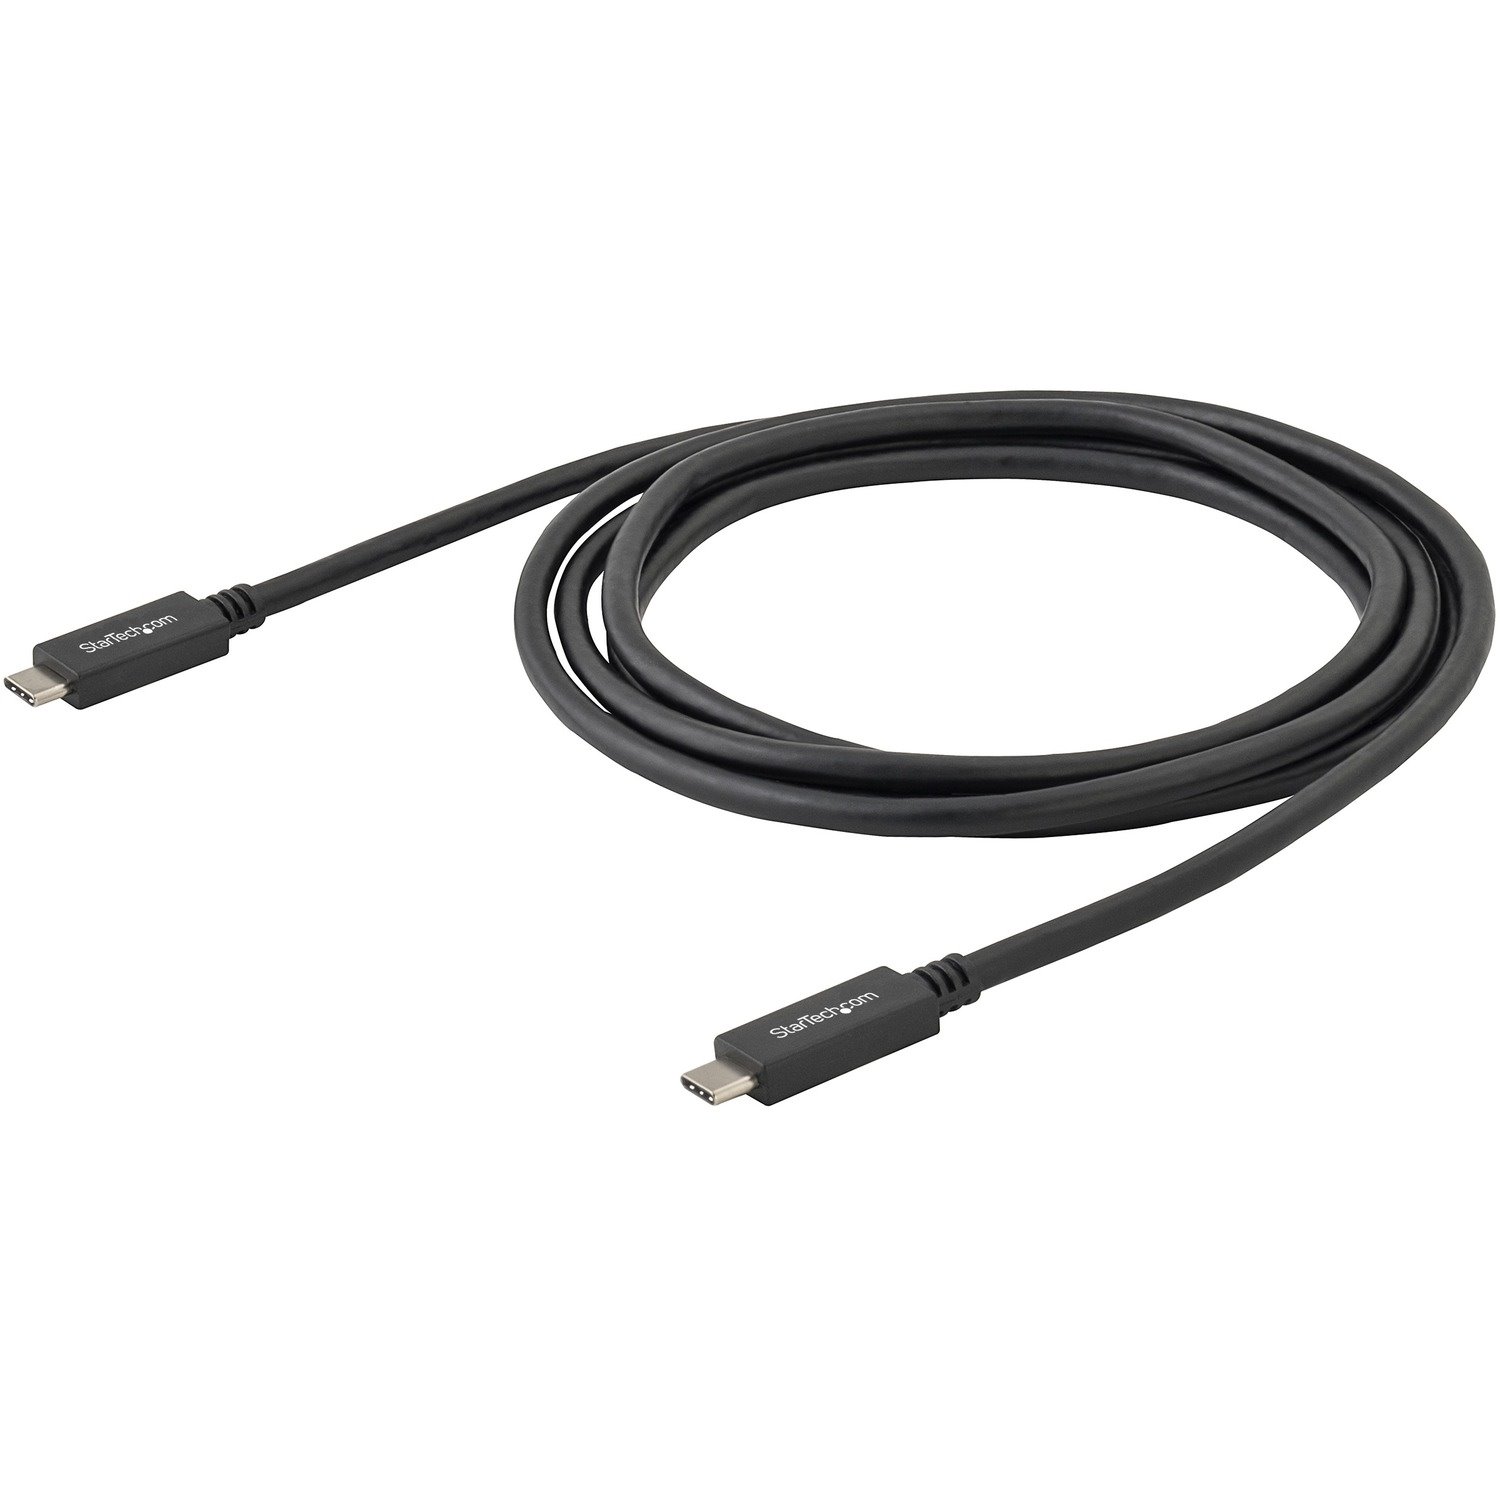 StarTech.com 0.5m USB C to USB C Cable - M/M - USB 3.1 Cable (10Gbps) - USB Type C Cable - USB 3.1 Type C Cable